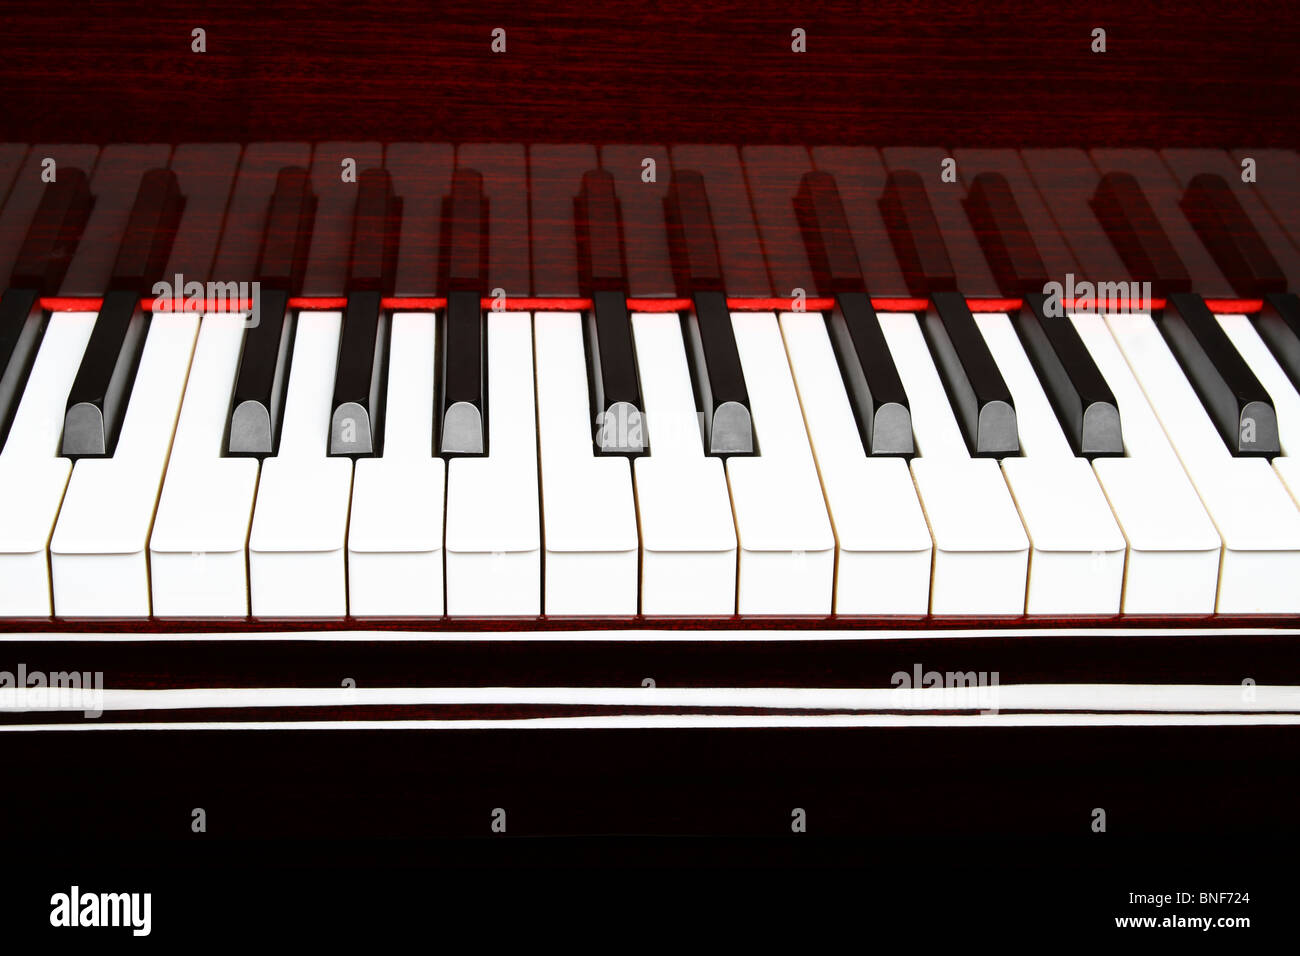 piano keys Stock Photo